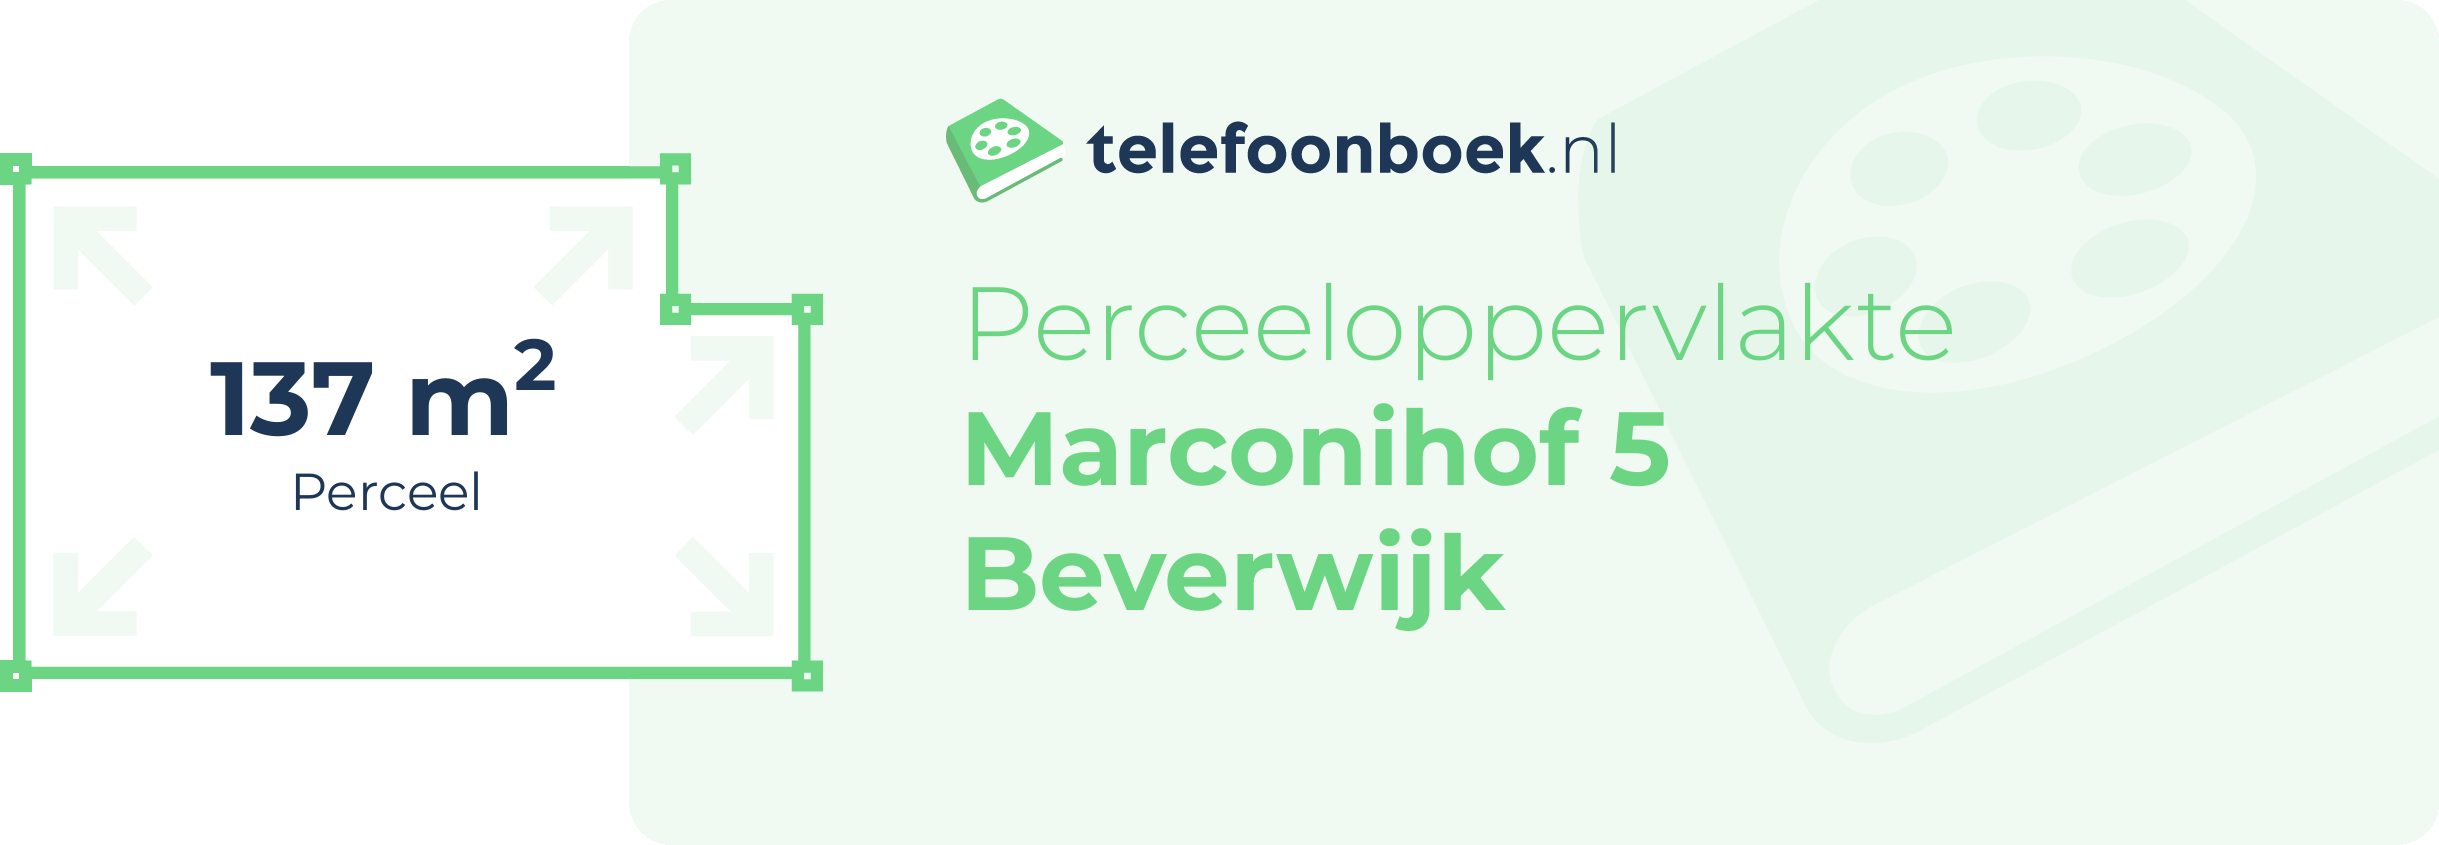 Perceeloppervlakte Marconihof 5 Beverwijk